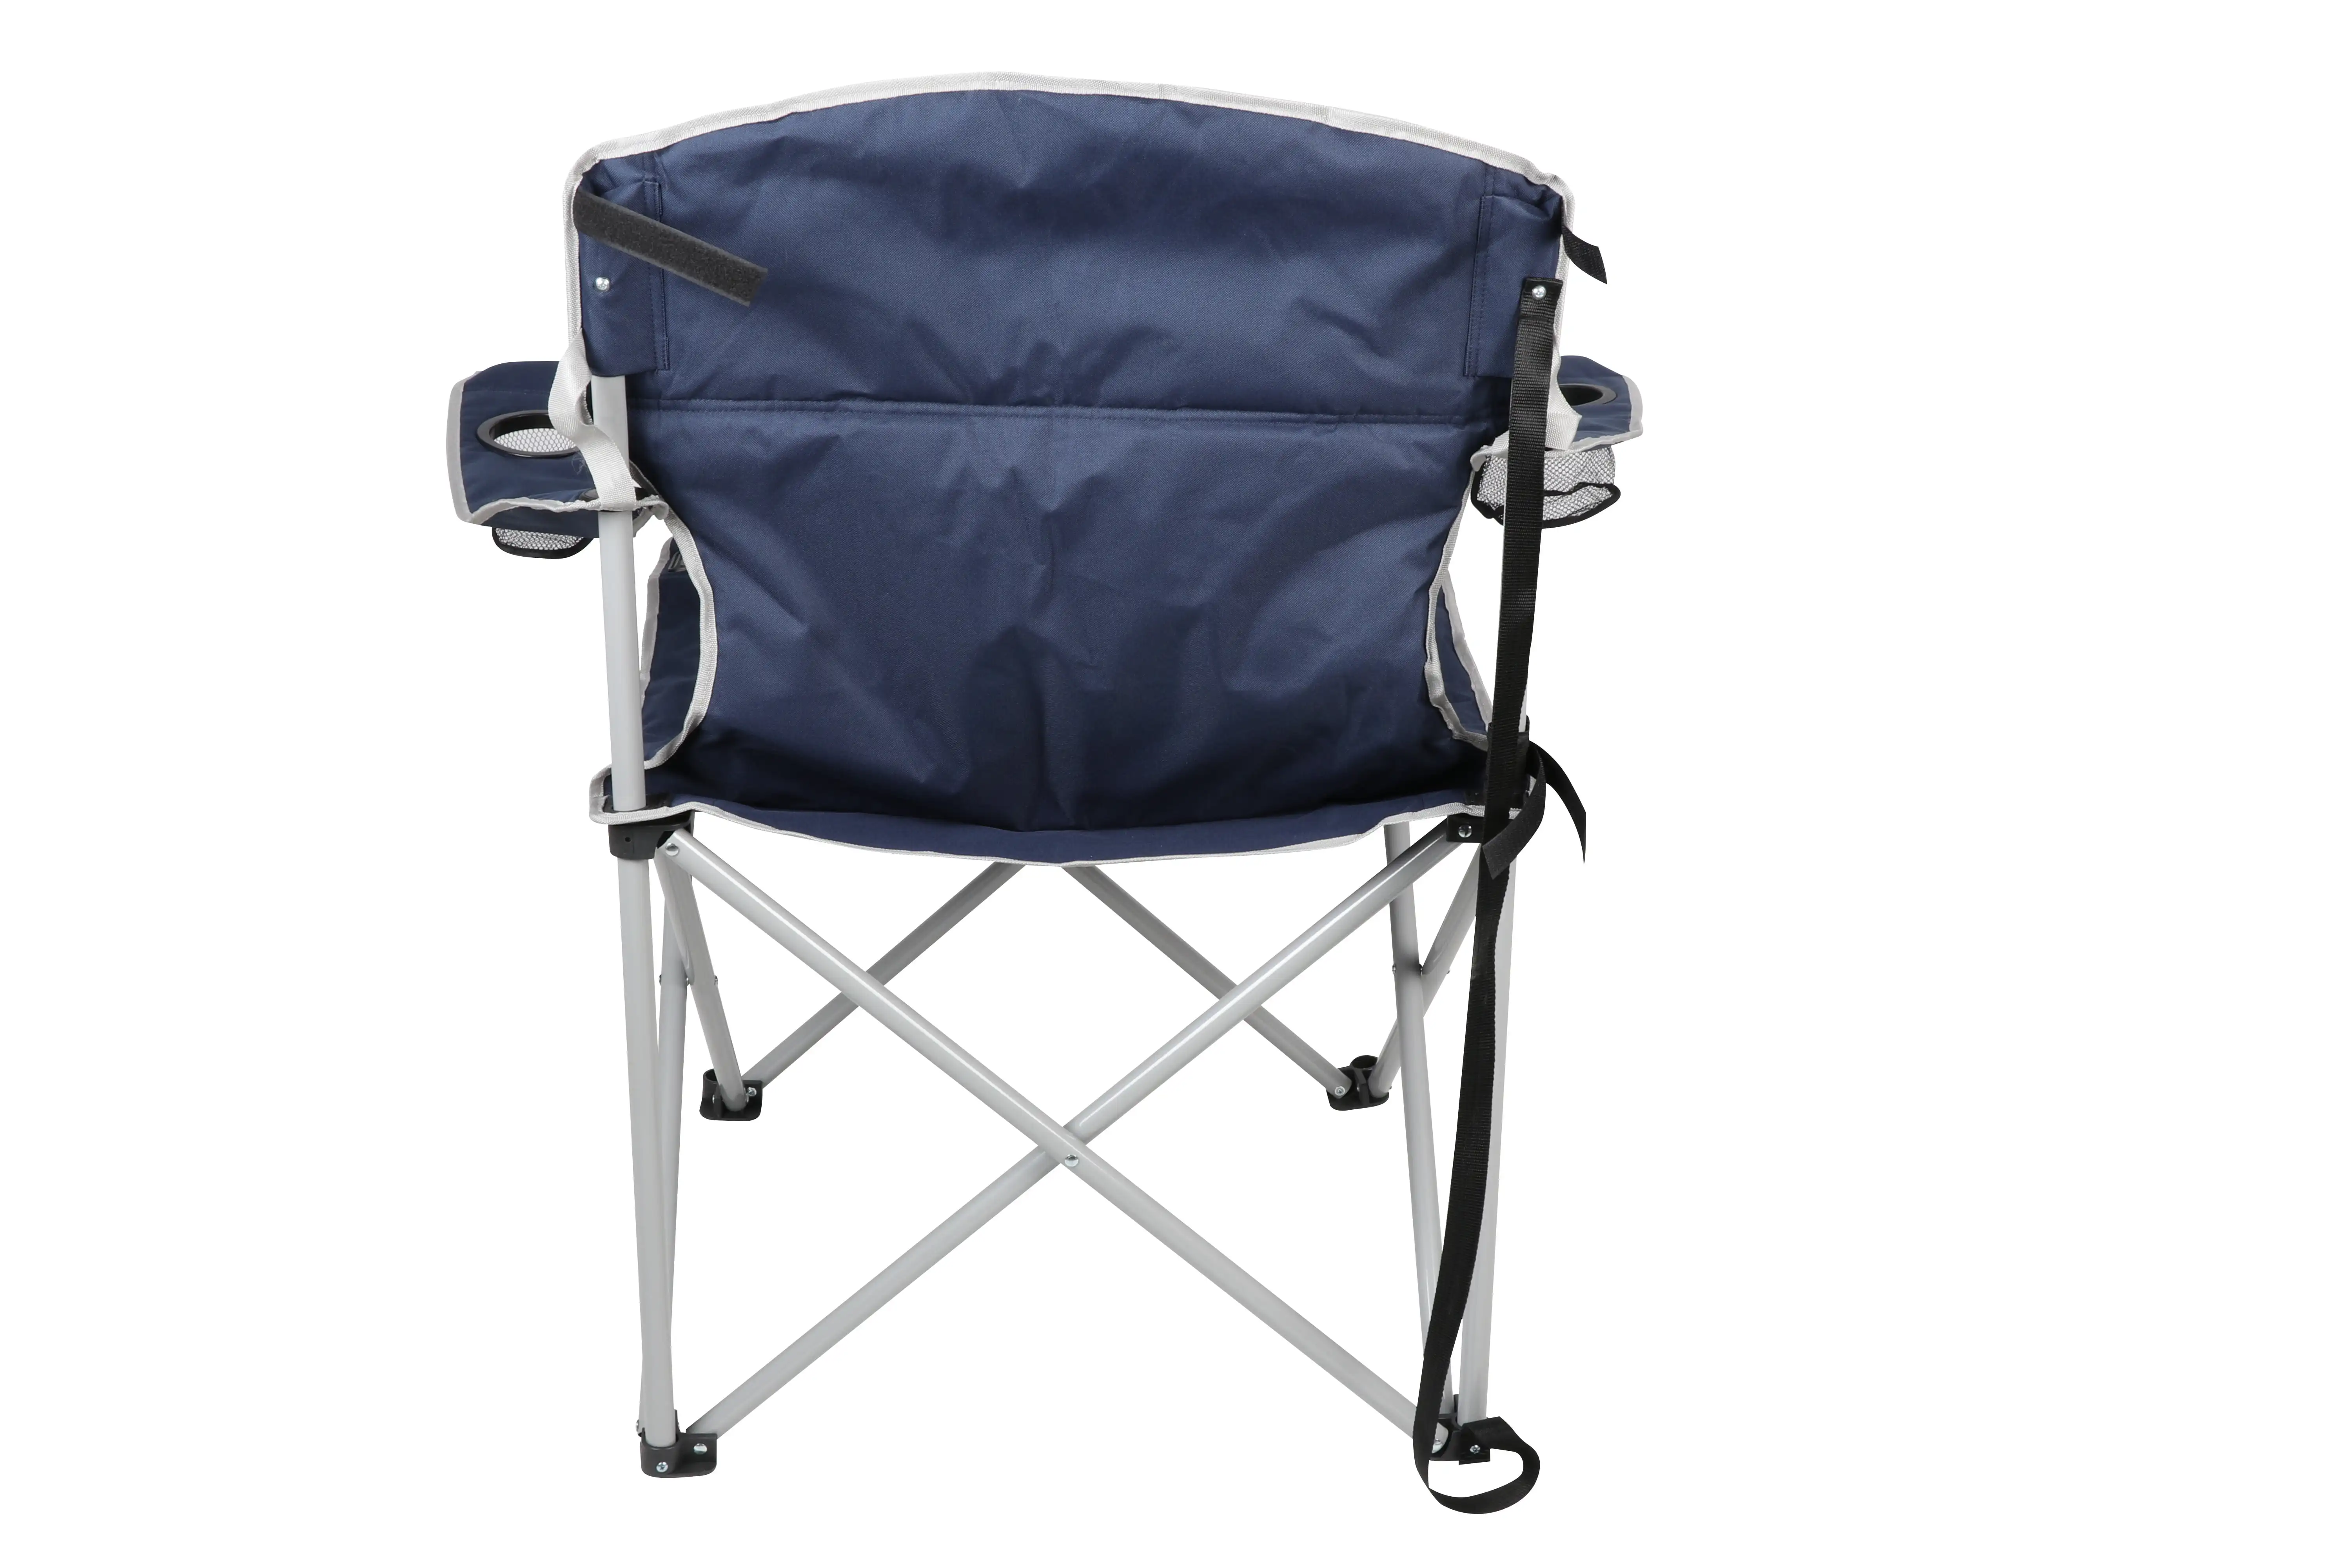 גדול וגבוה הכיסא עם מחזיקי גביע, כחול חוצות כיסאות קמפינג כיסא מתקפל ריהוט גן